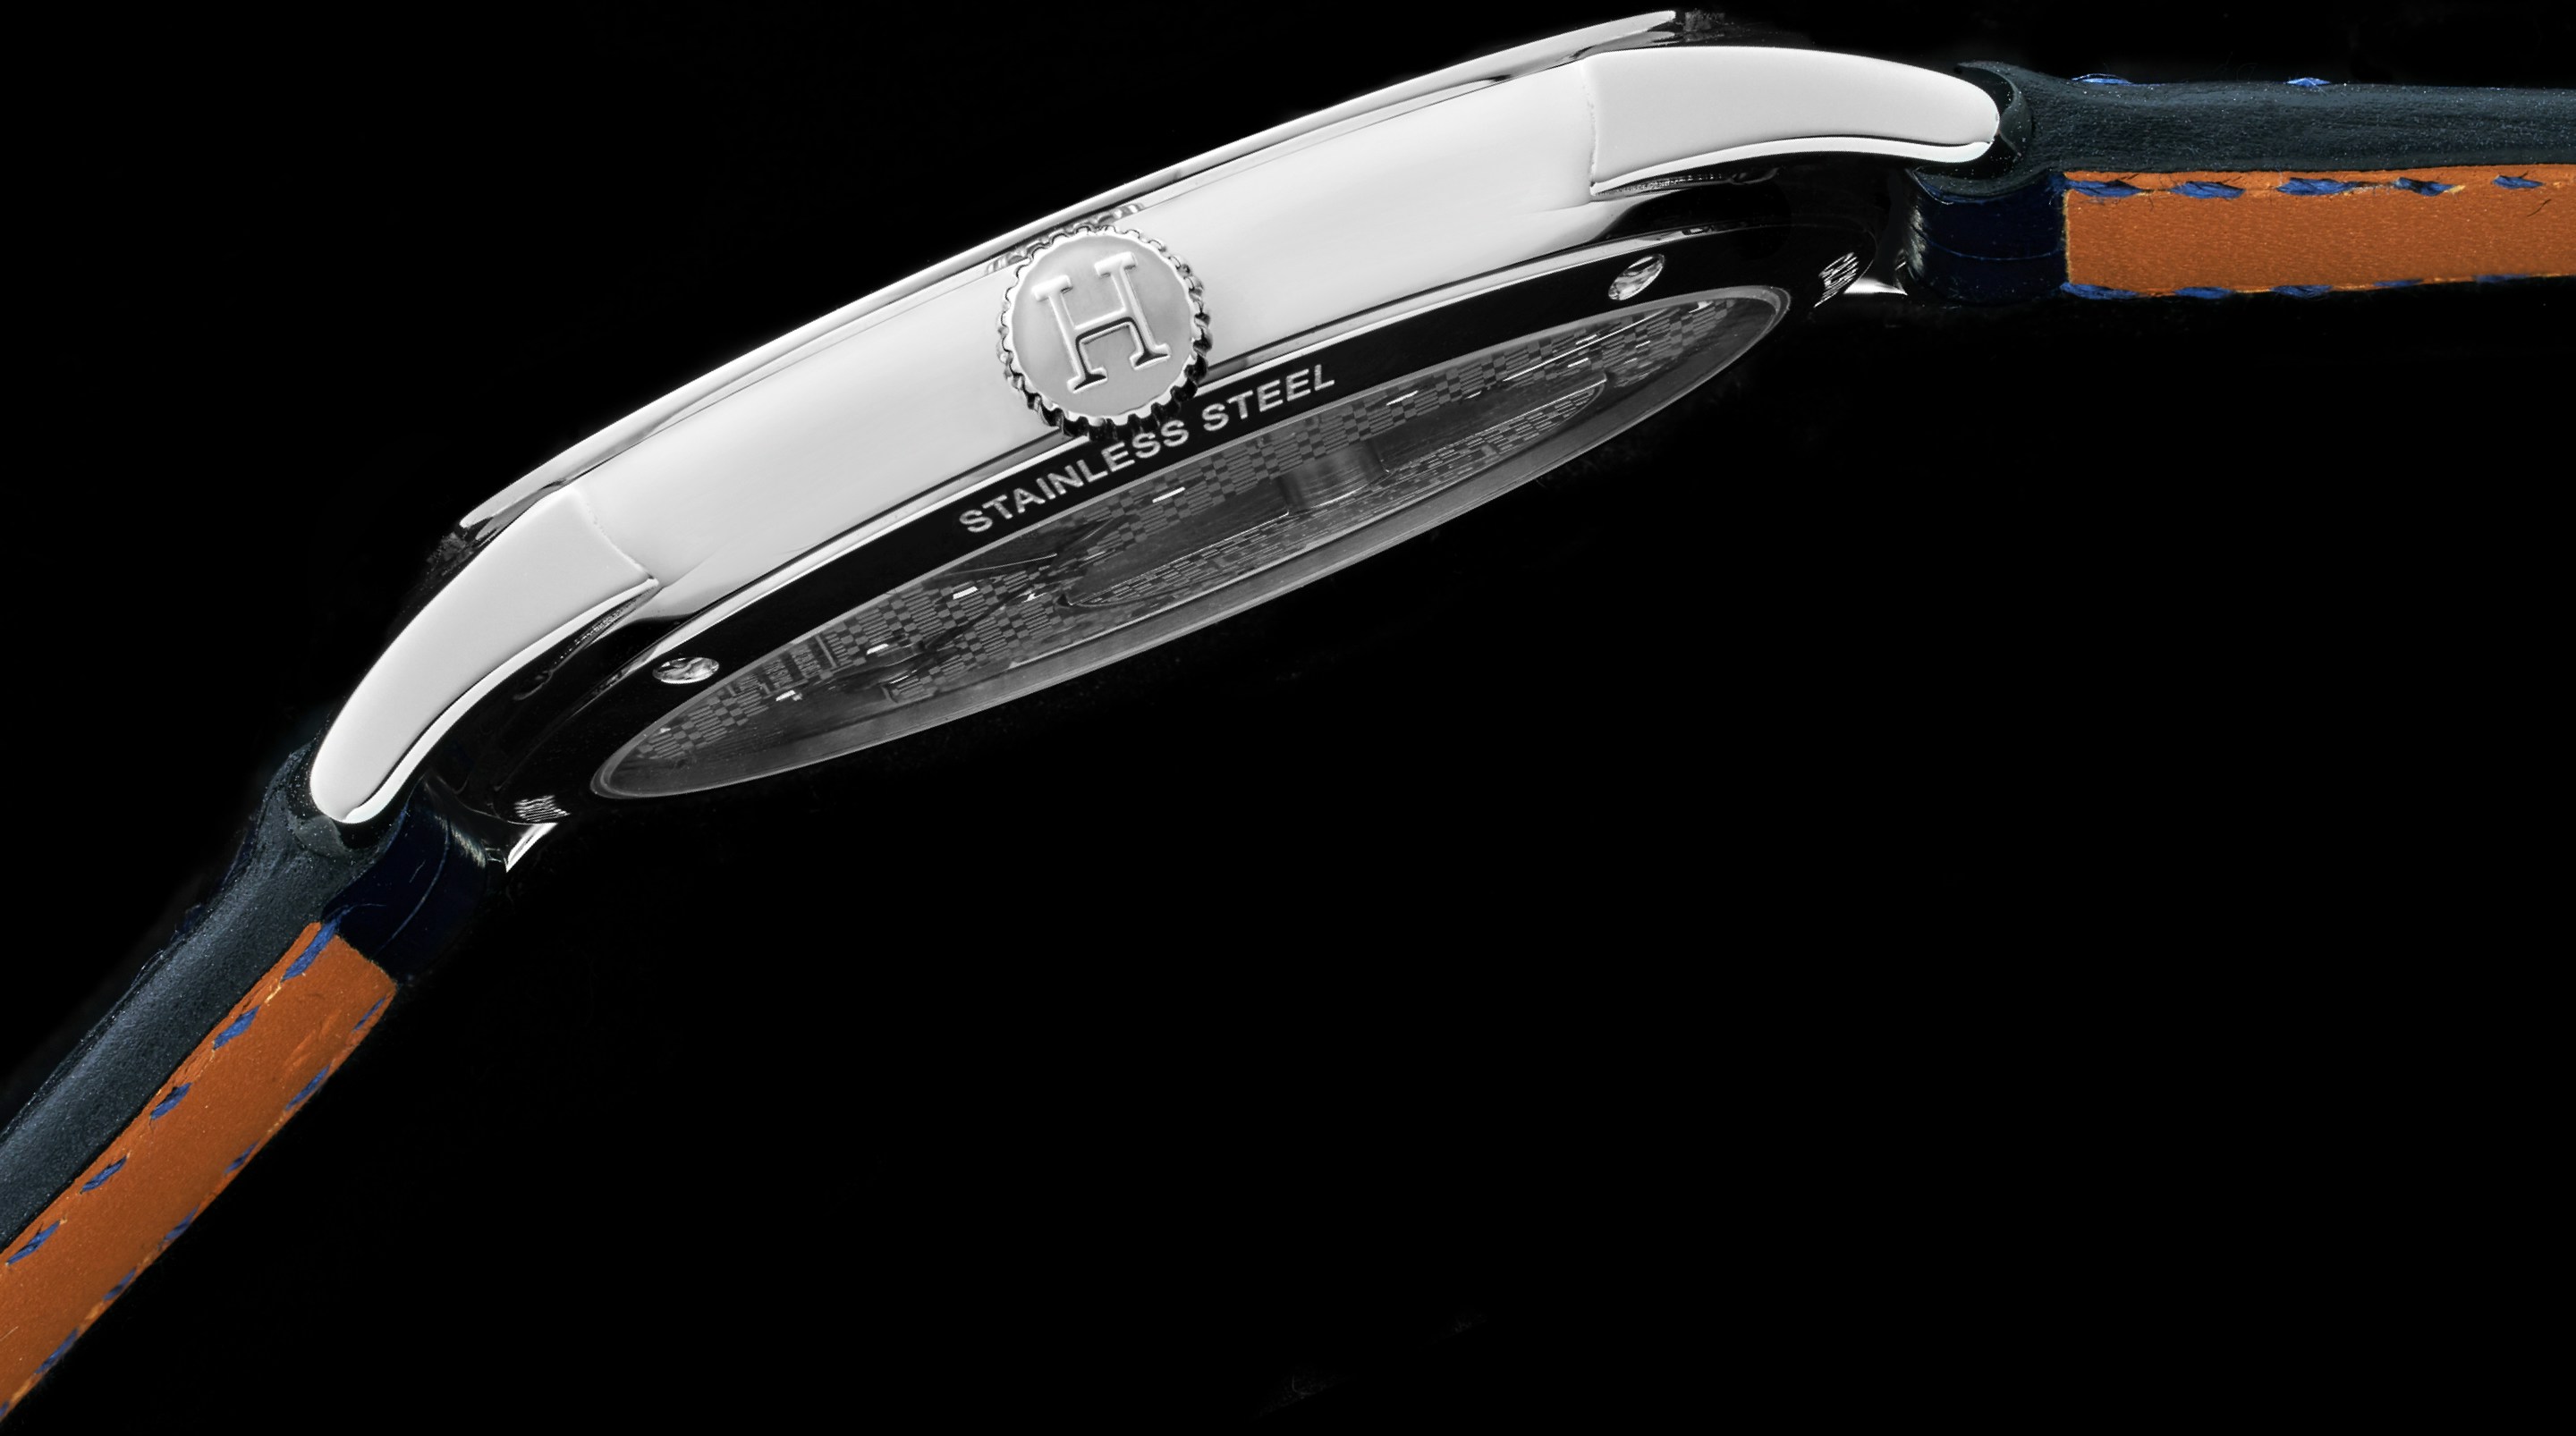 Hermès Medor Secret Watch Stainless Steel 23mm x 23mm (W028322WW00) —  Shreve, Crump & Low